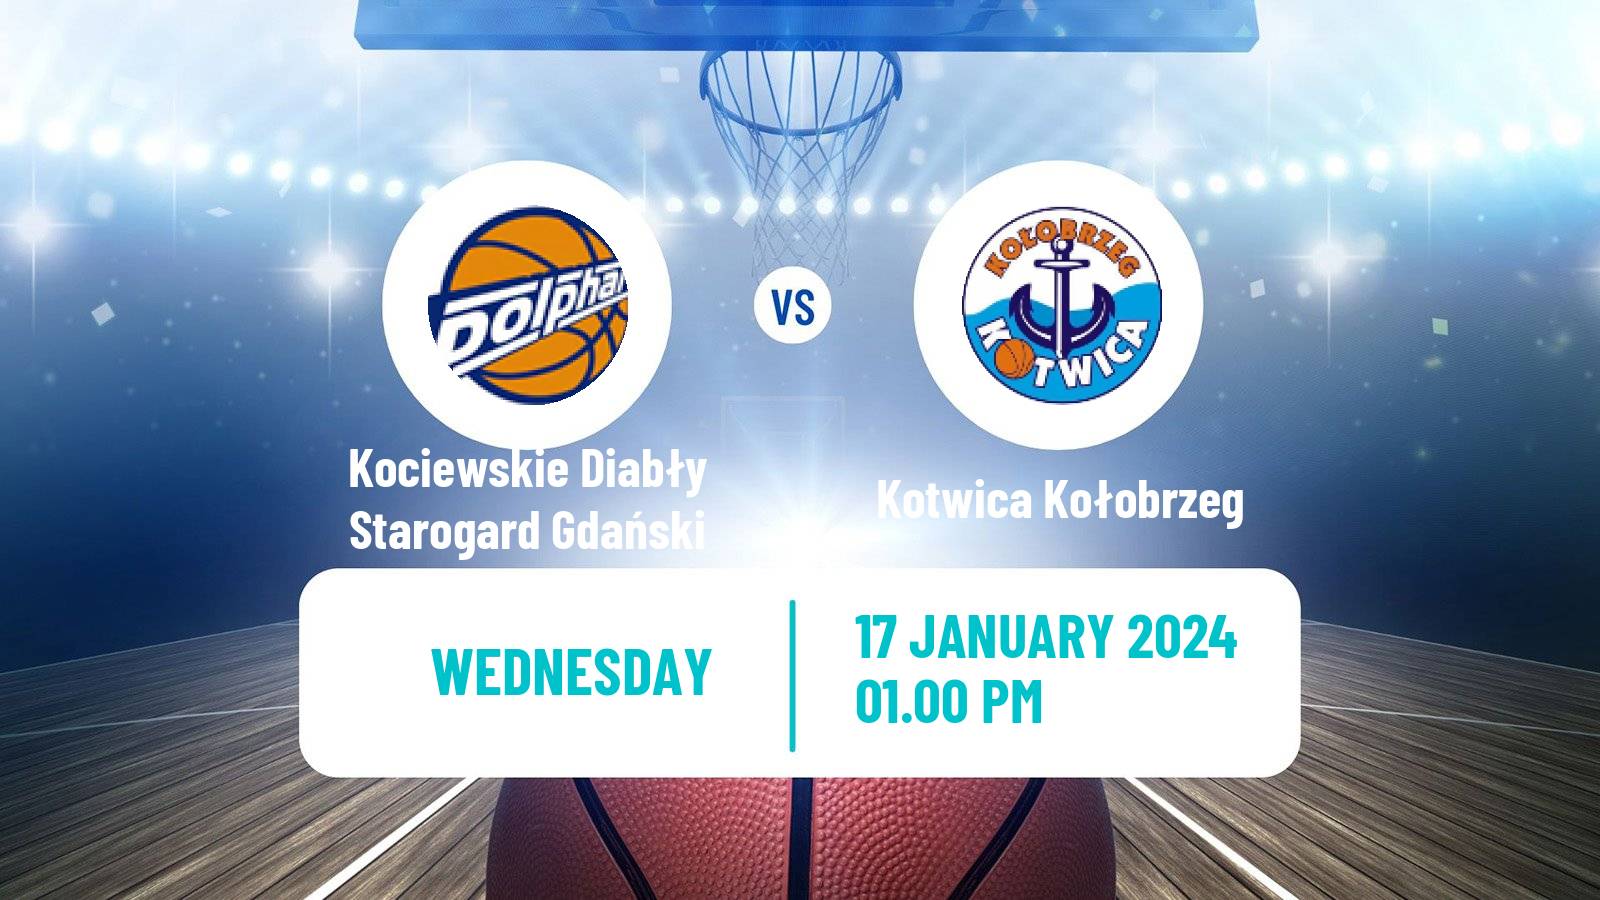 Basketball Polish 1 Liga Basketball Kociewskie Diabły Starogard Gdański - Kotwica Kołobrzeg